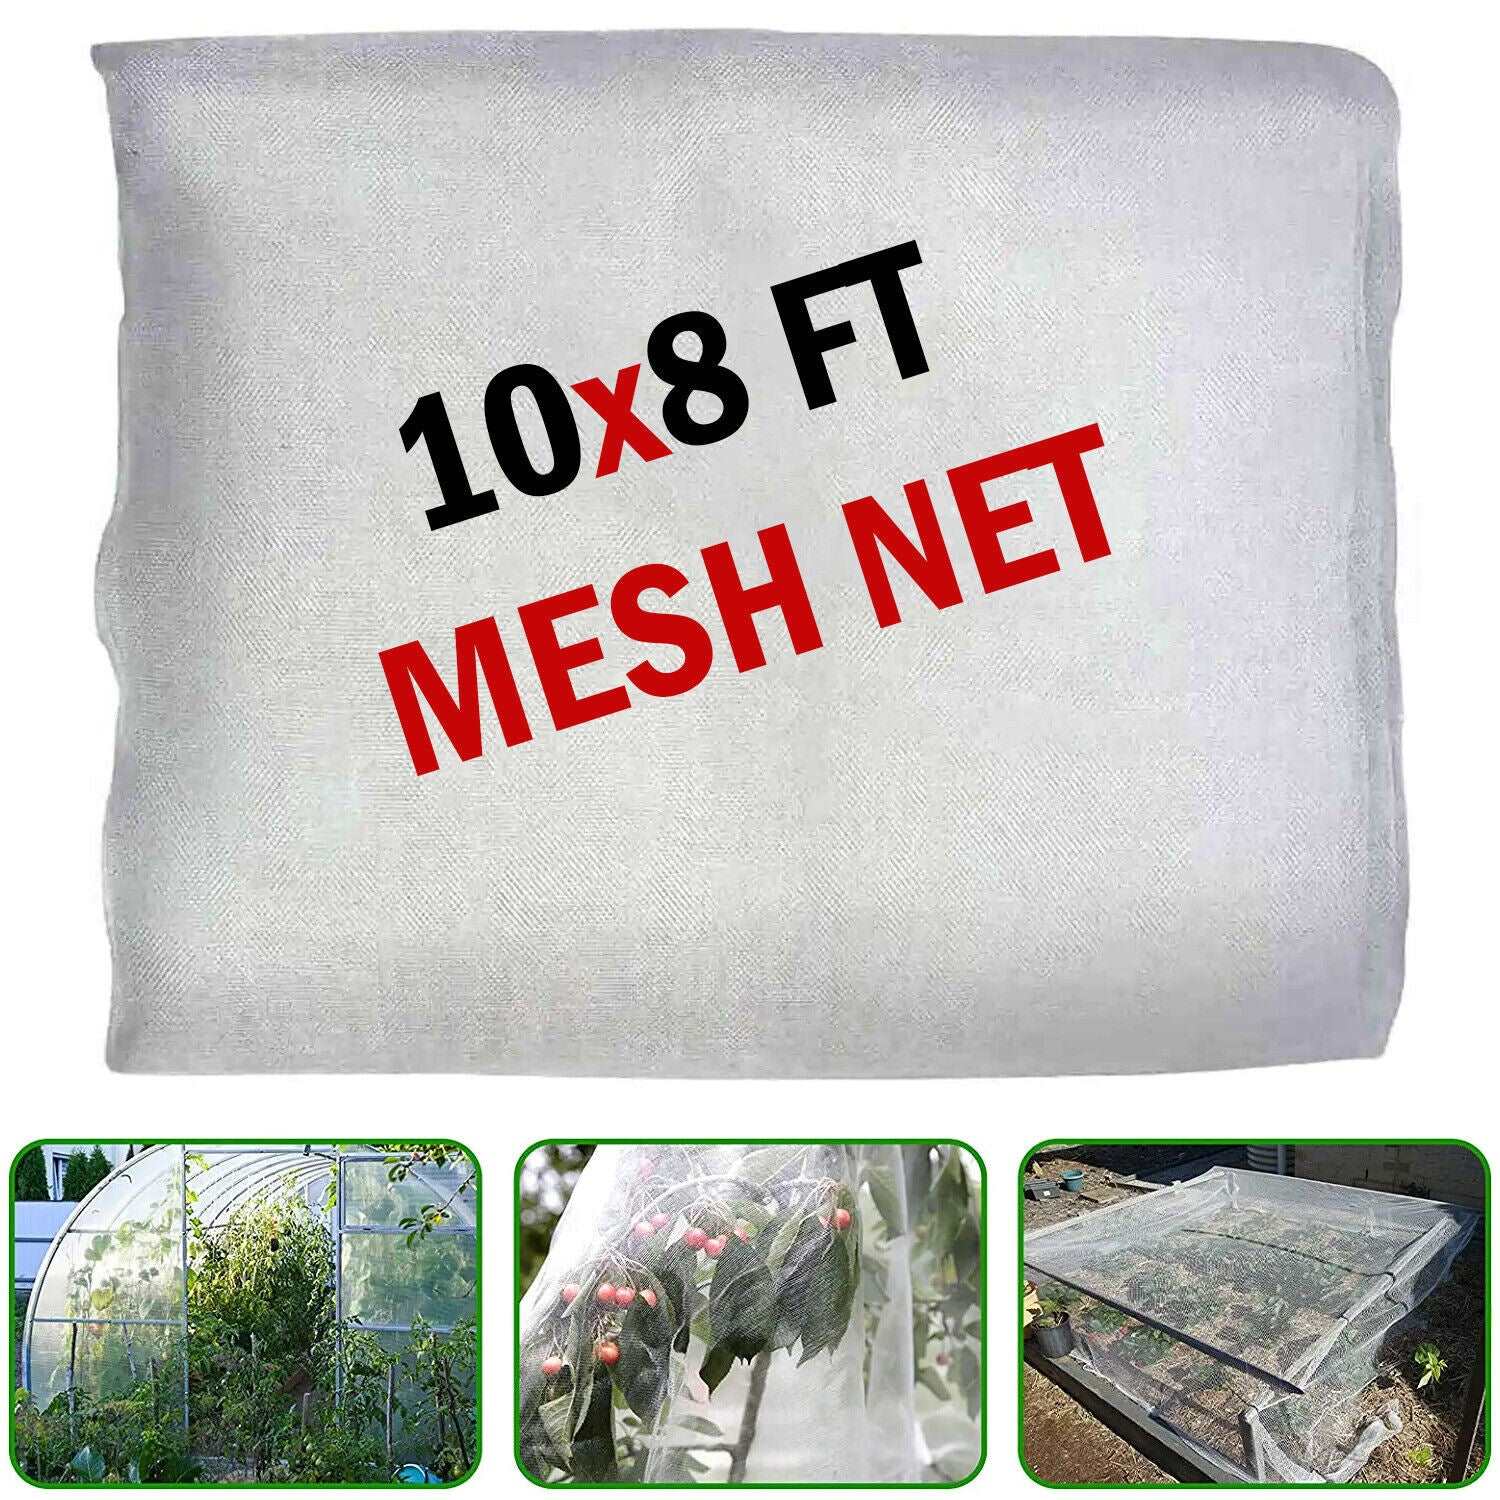 Garden Mesh Cover, Fine Mesh Net